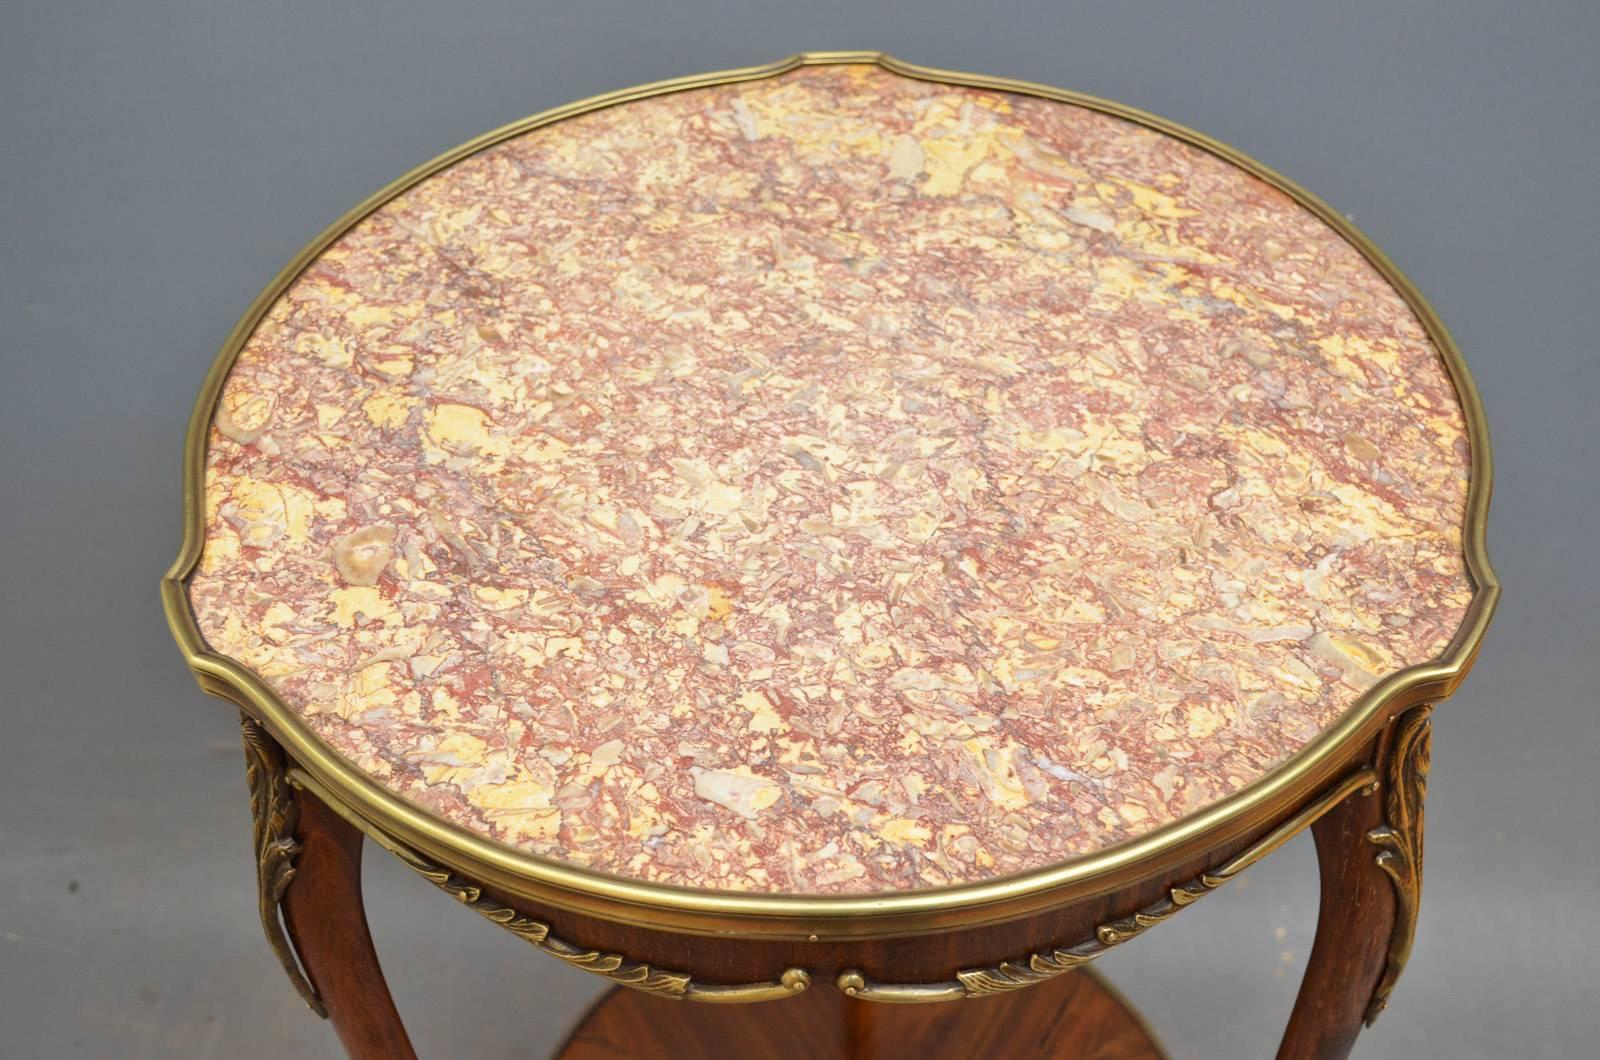 K0325, élégante table d'appoint en palissandre du XIXe siècle, avec plateau en marbre d'origine et frise façonnée avec bordure en laiton et trois pieds cabriole avec décoration en bronze doré réunis par un sous-palier façonné. Cette table ancienne a